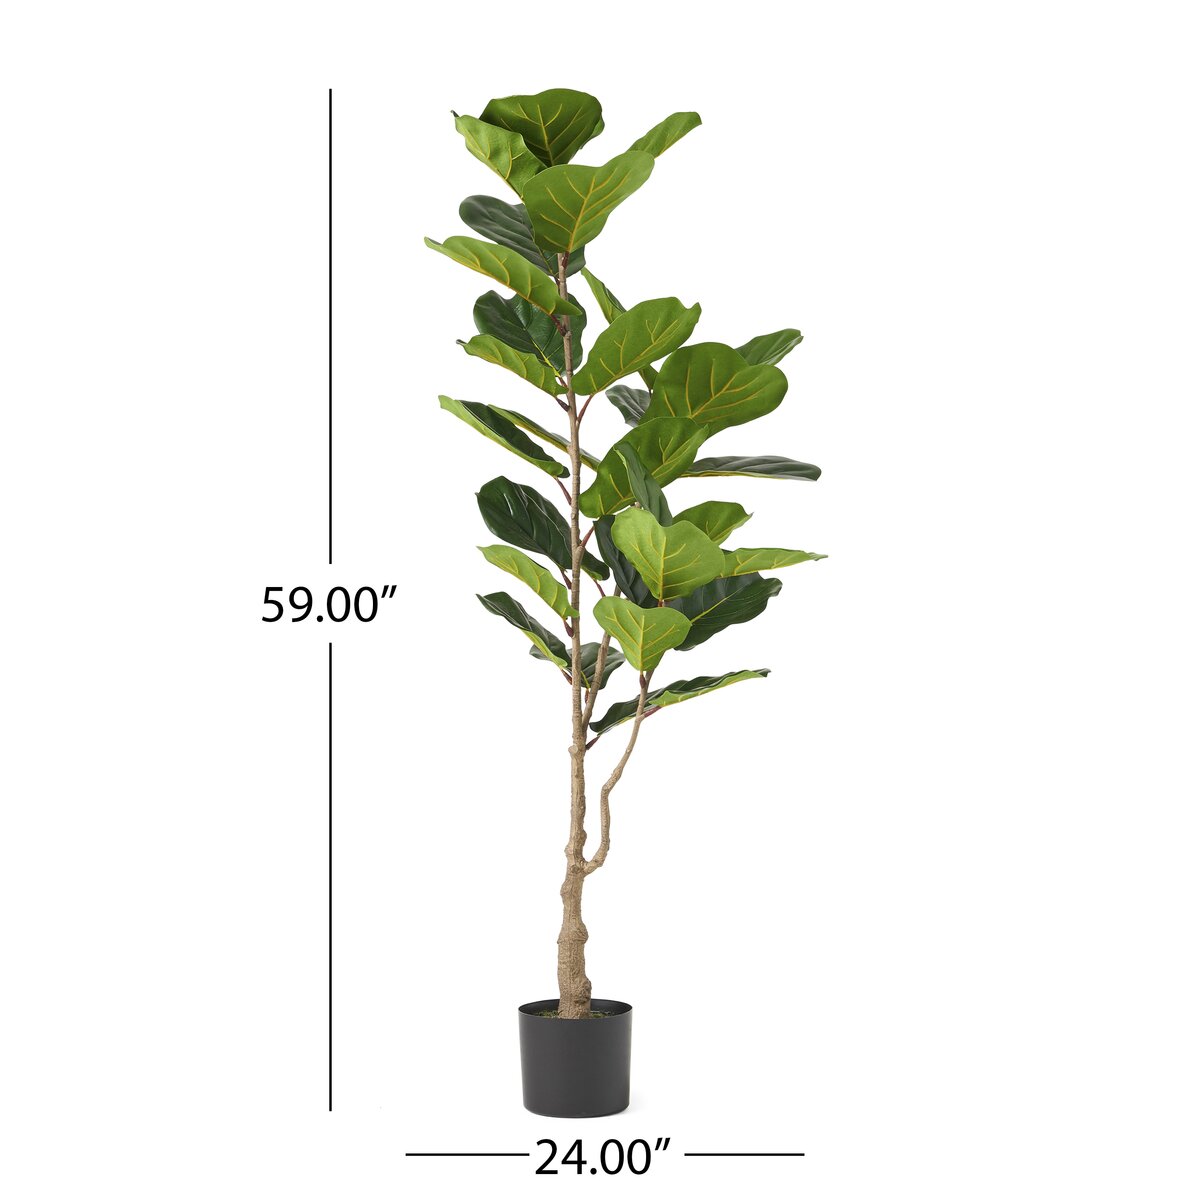 Primrue Achilles Artificial Fiddle-Leaf Fig Tree in Pot & Reviews | Wayfair